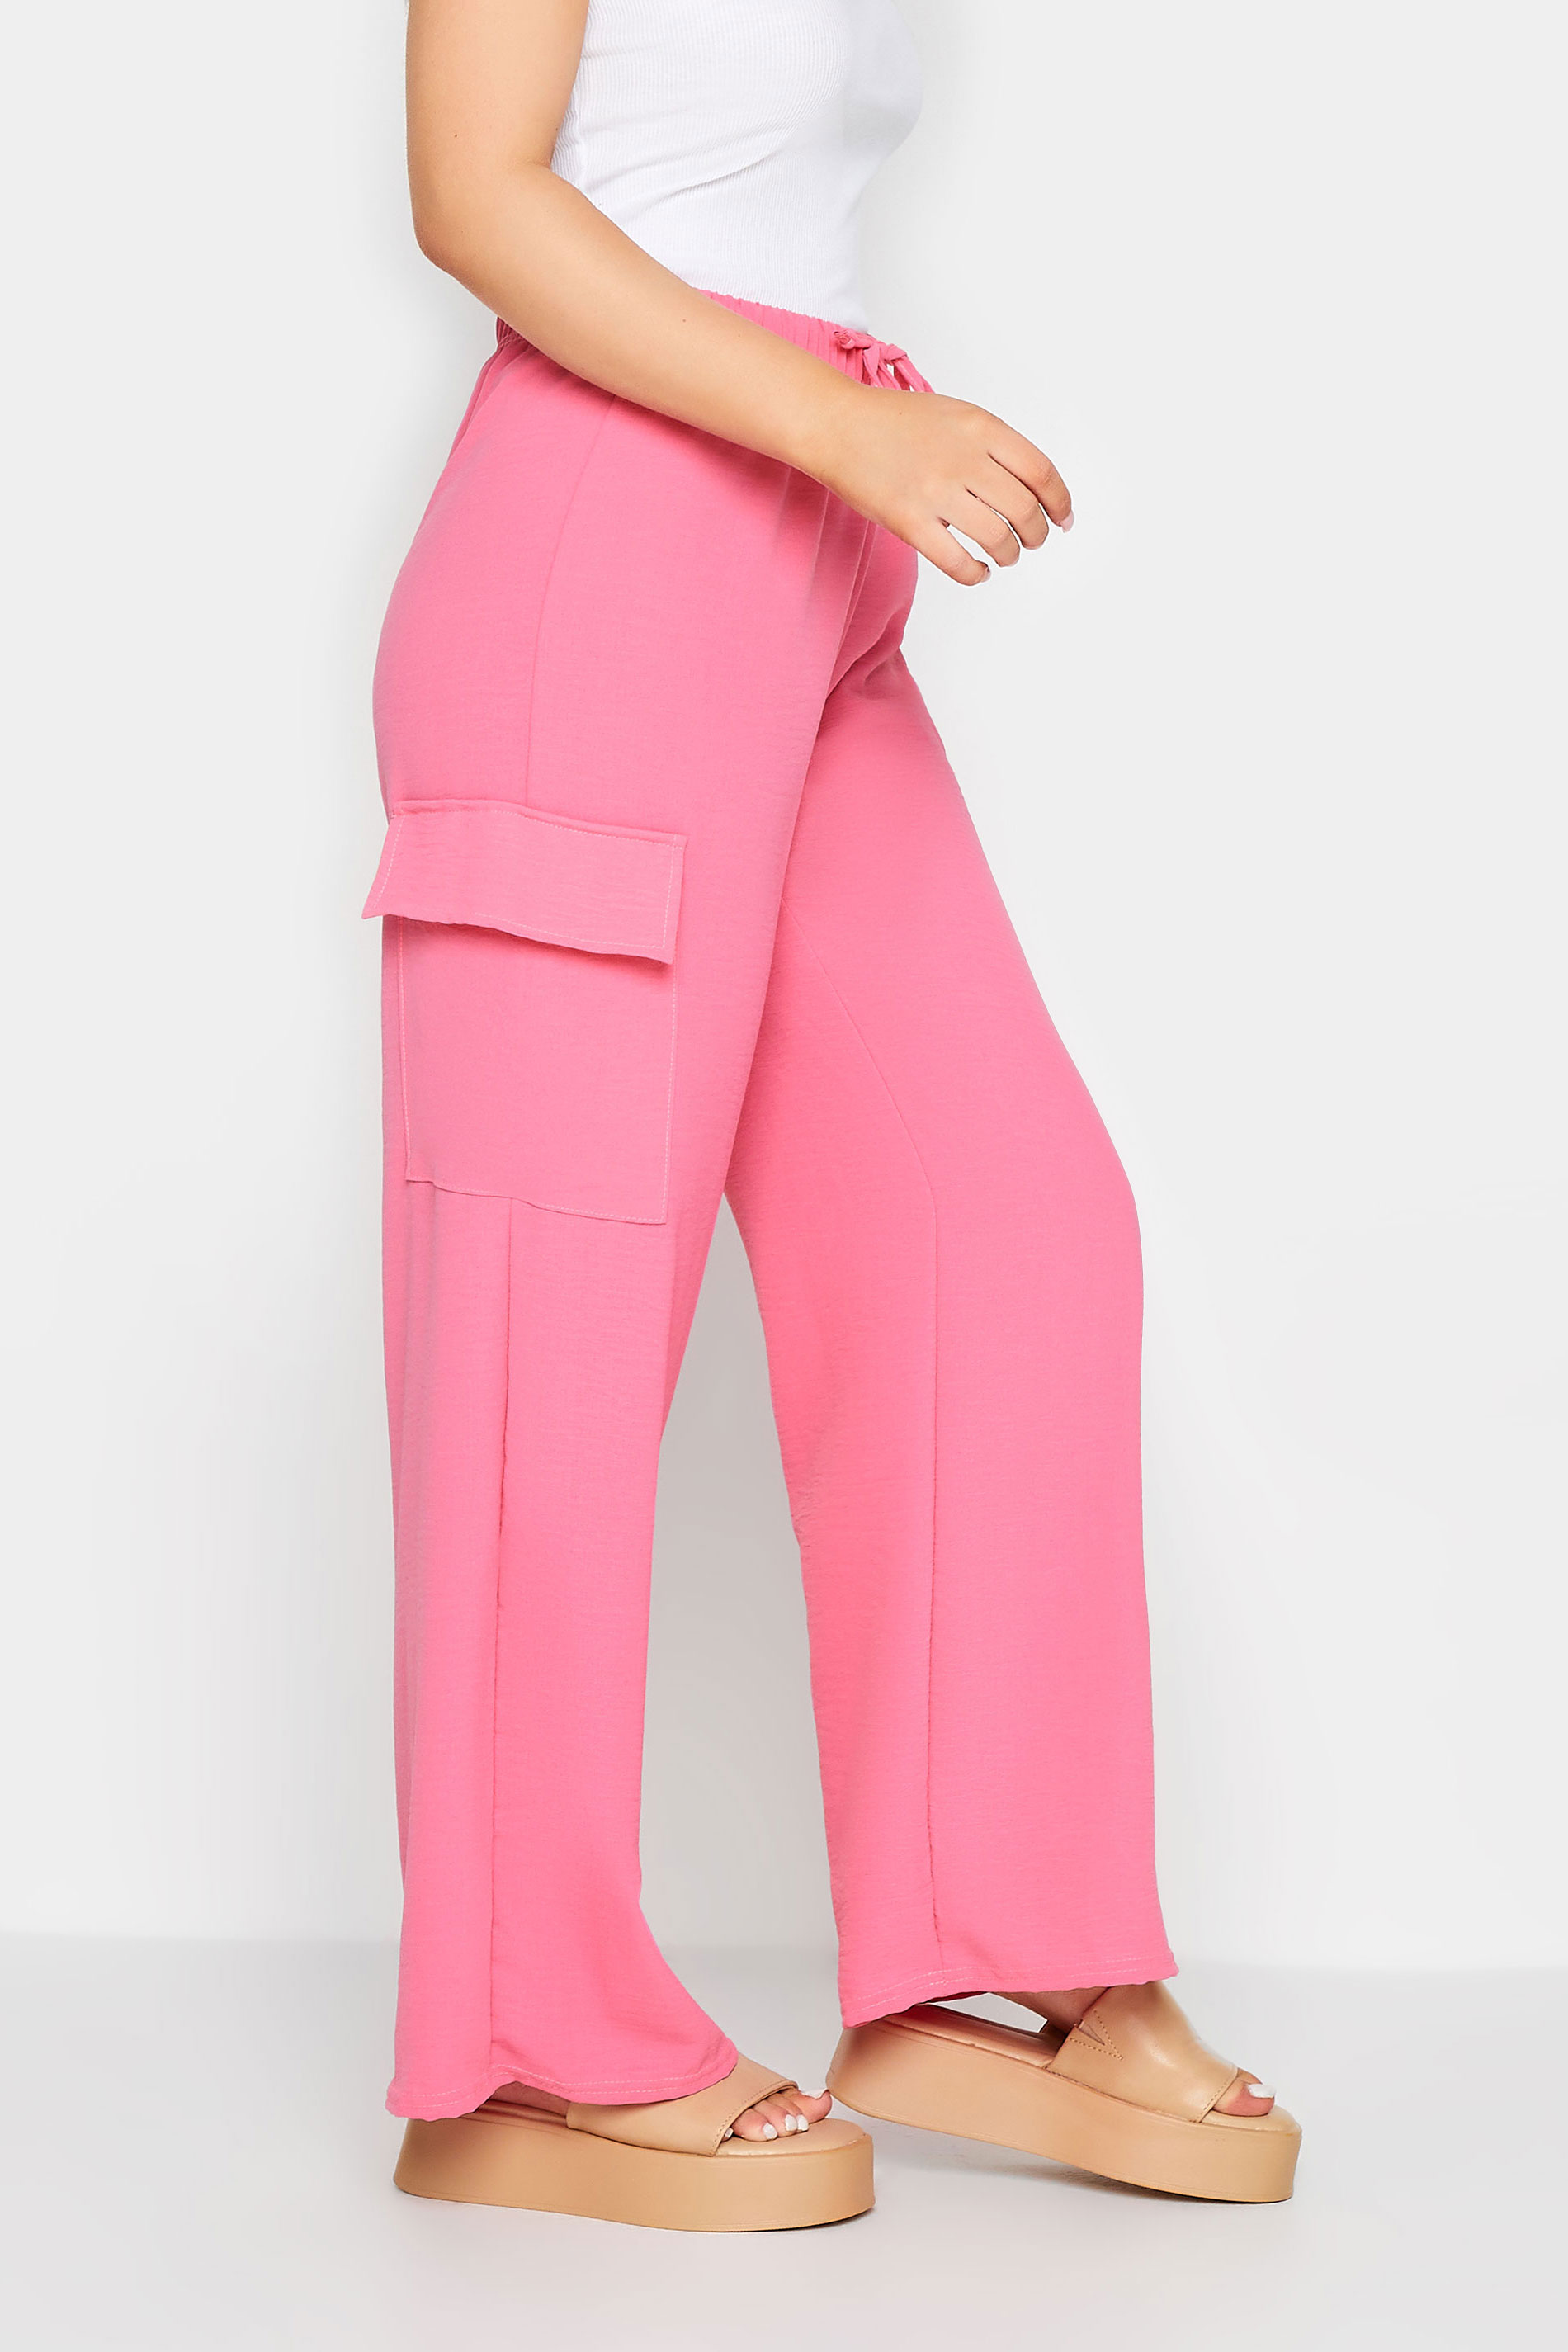 PixieGirl Hot Pink Utility Trousers | PixieGirl  1